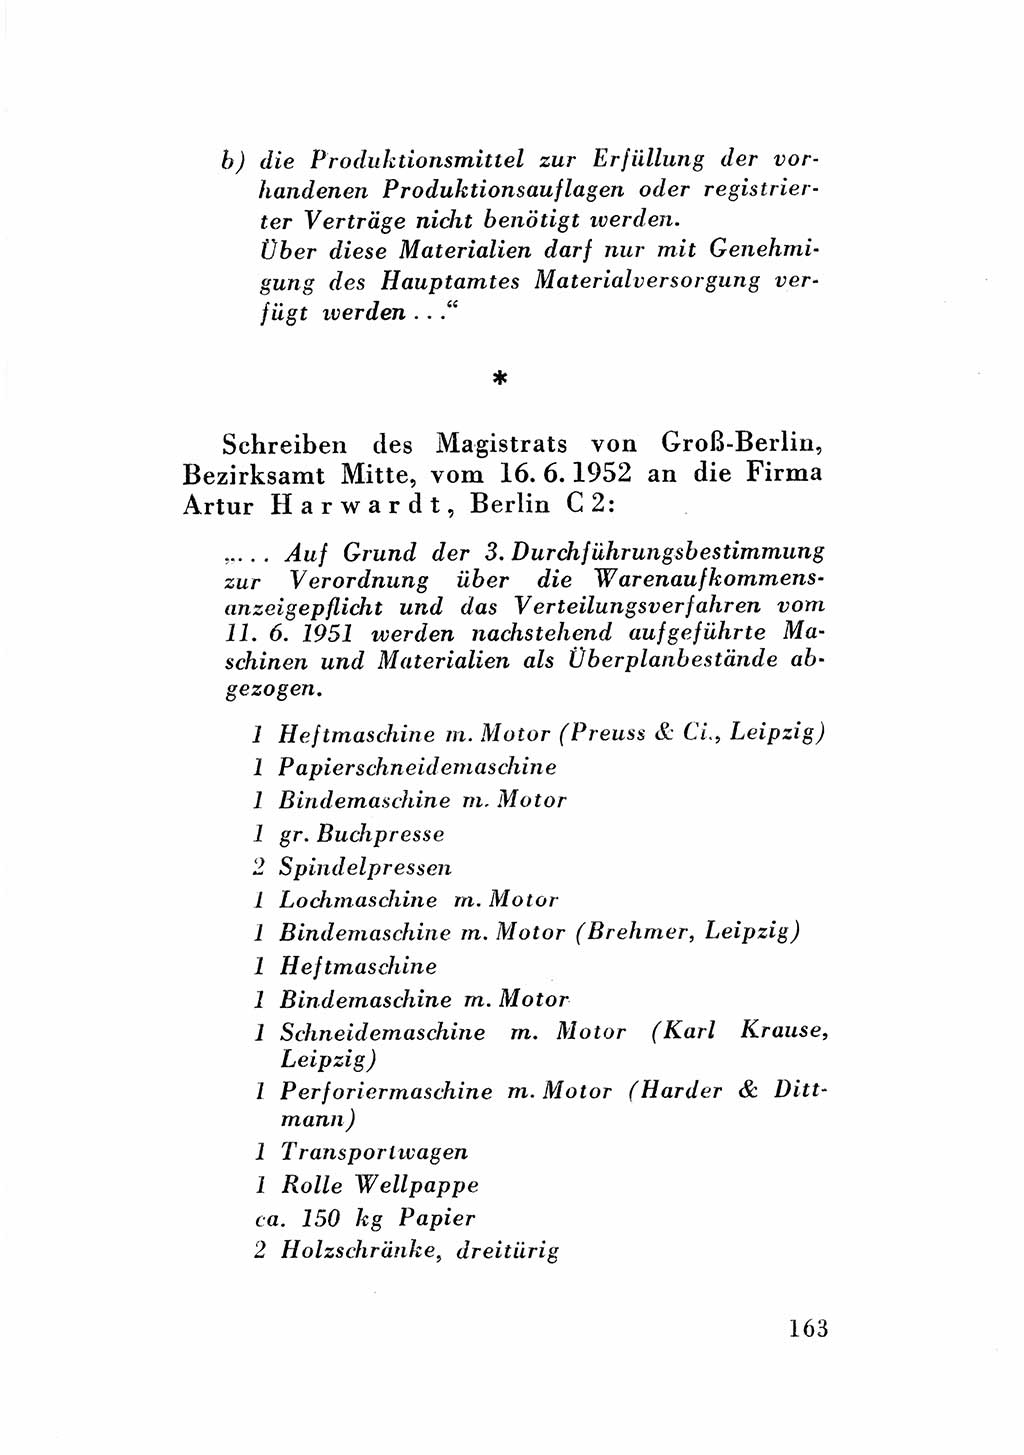 Katalog des Unrechts, Untersuchungsausschuß Freiheitlicher Juristen (UfJ) [Bundesrepublik Deutschland (BRD)] 1956, Seite 163 (Kat. UnR. UfJ BRD 1956, S. 163)